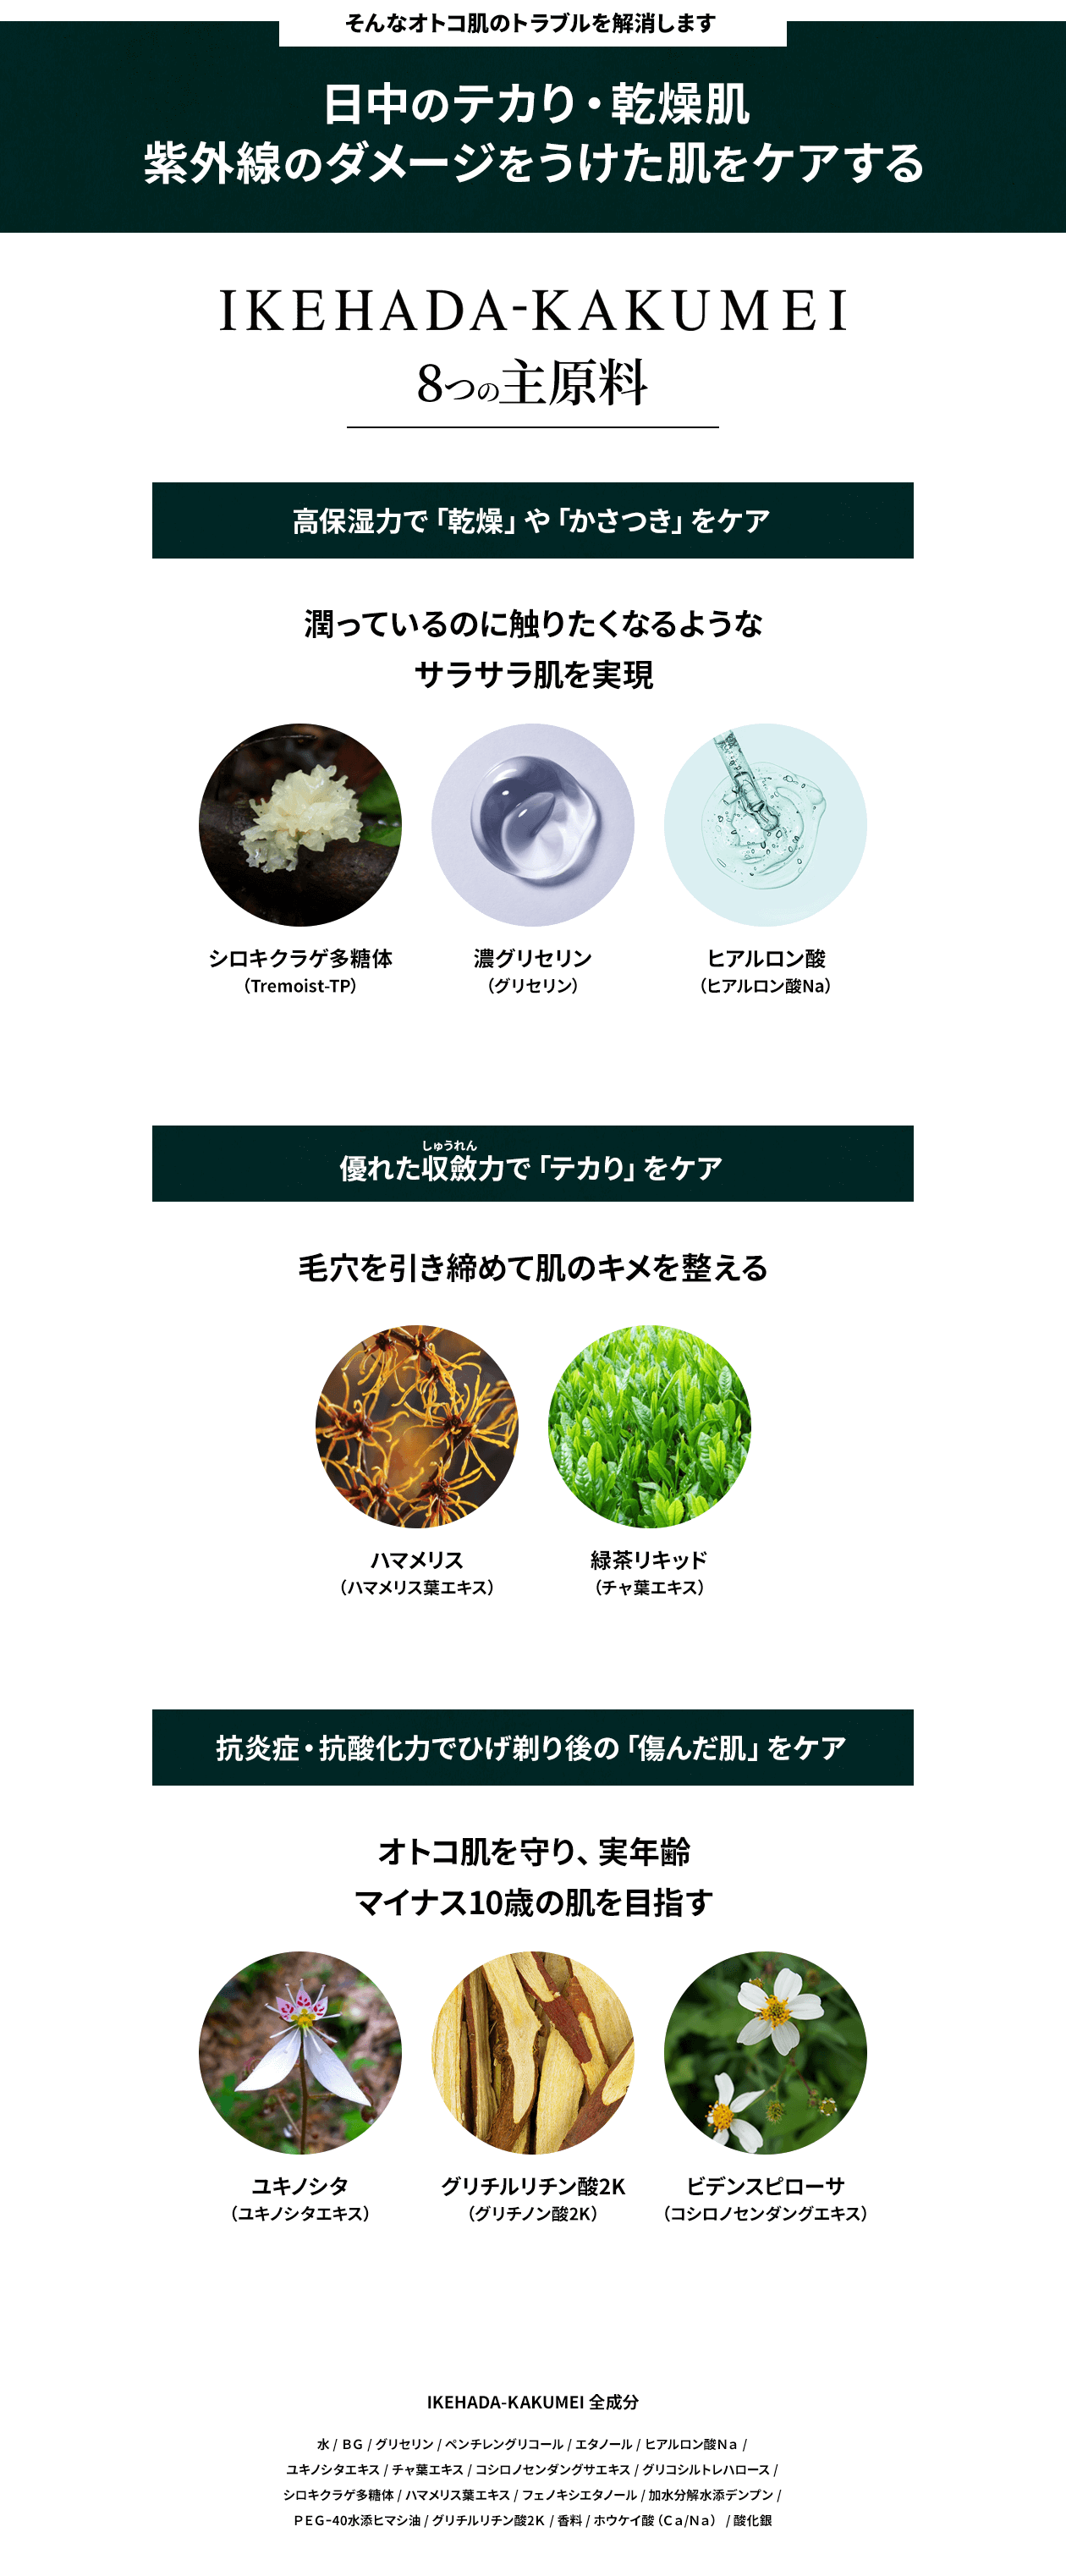 IKEHADA-KAKUMEI 8つの主原料